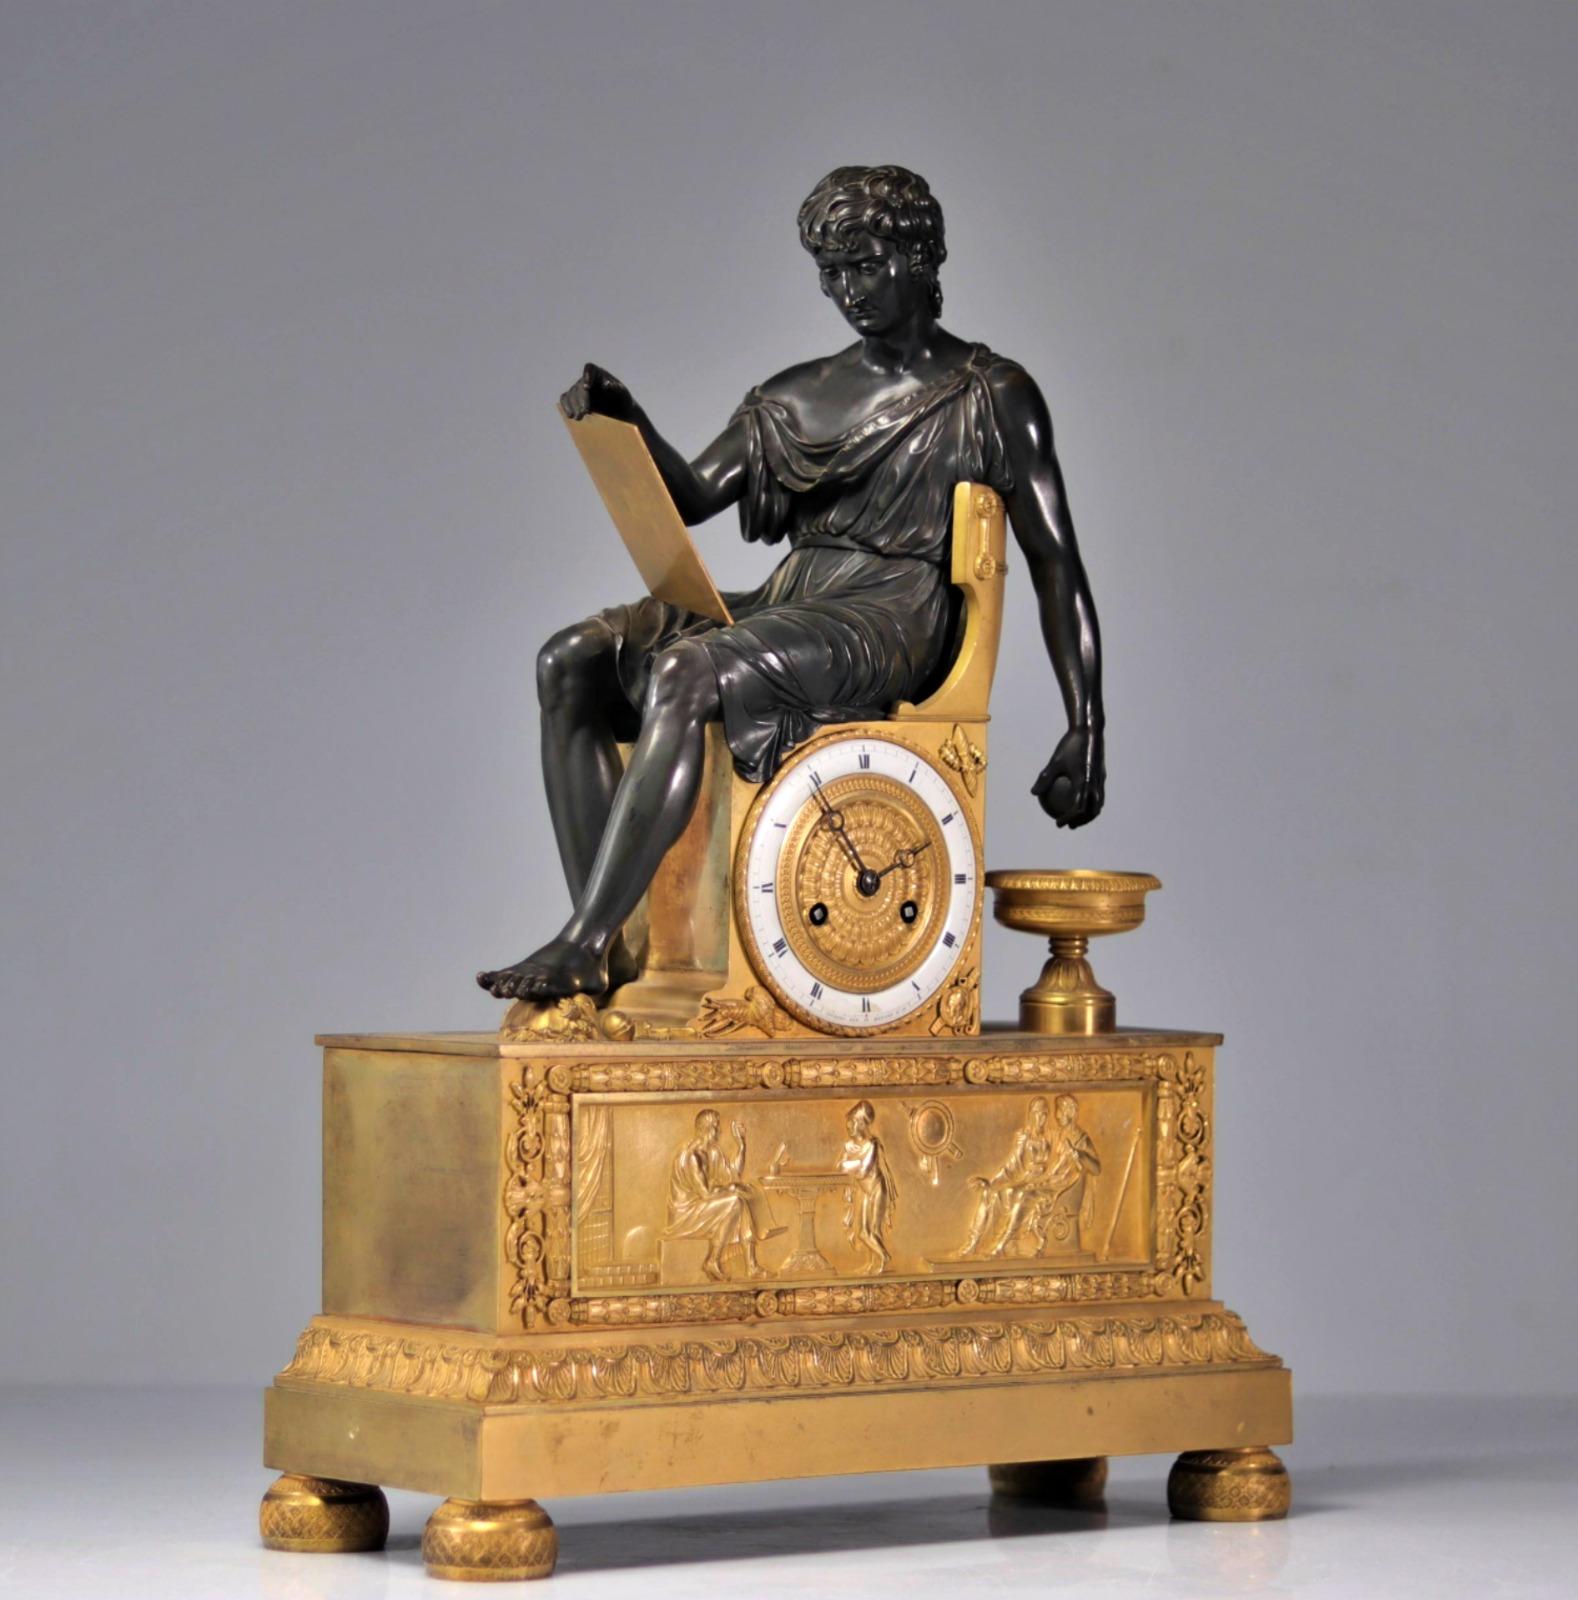 Importante horloge Empire en bronze à deux patines Alexander the Great 19ème siècle
Poids : 11,00 kg
Dimensions : H 51cm x L 39cm 
France
Très bon état.